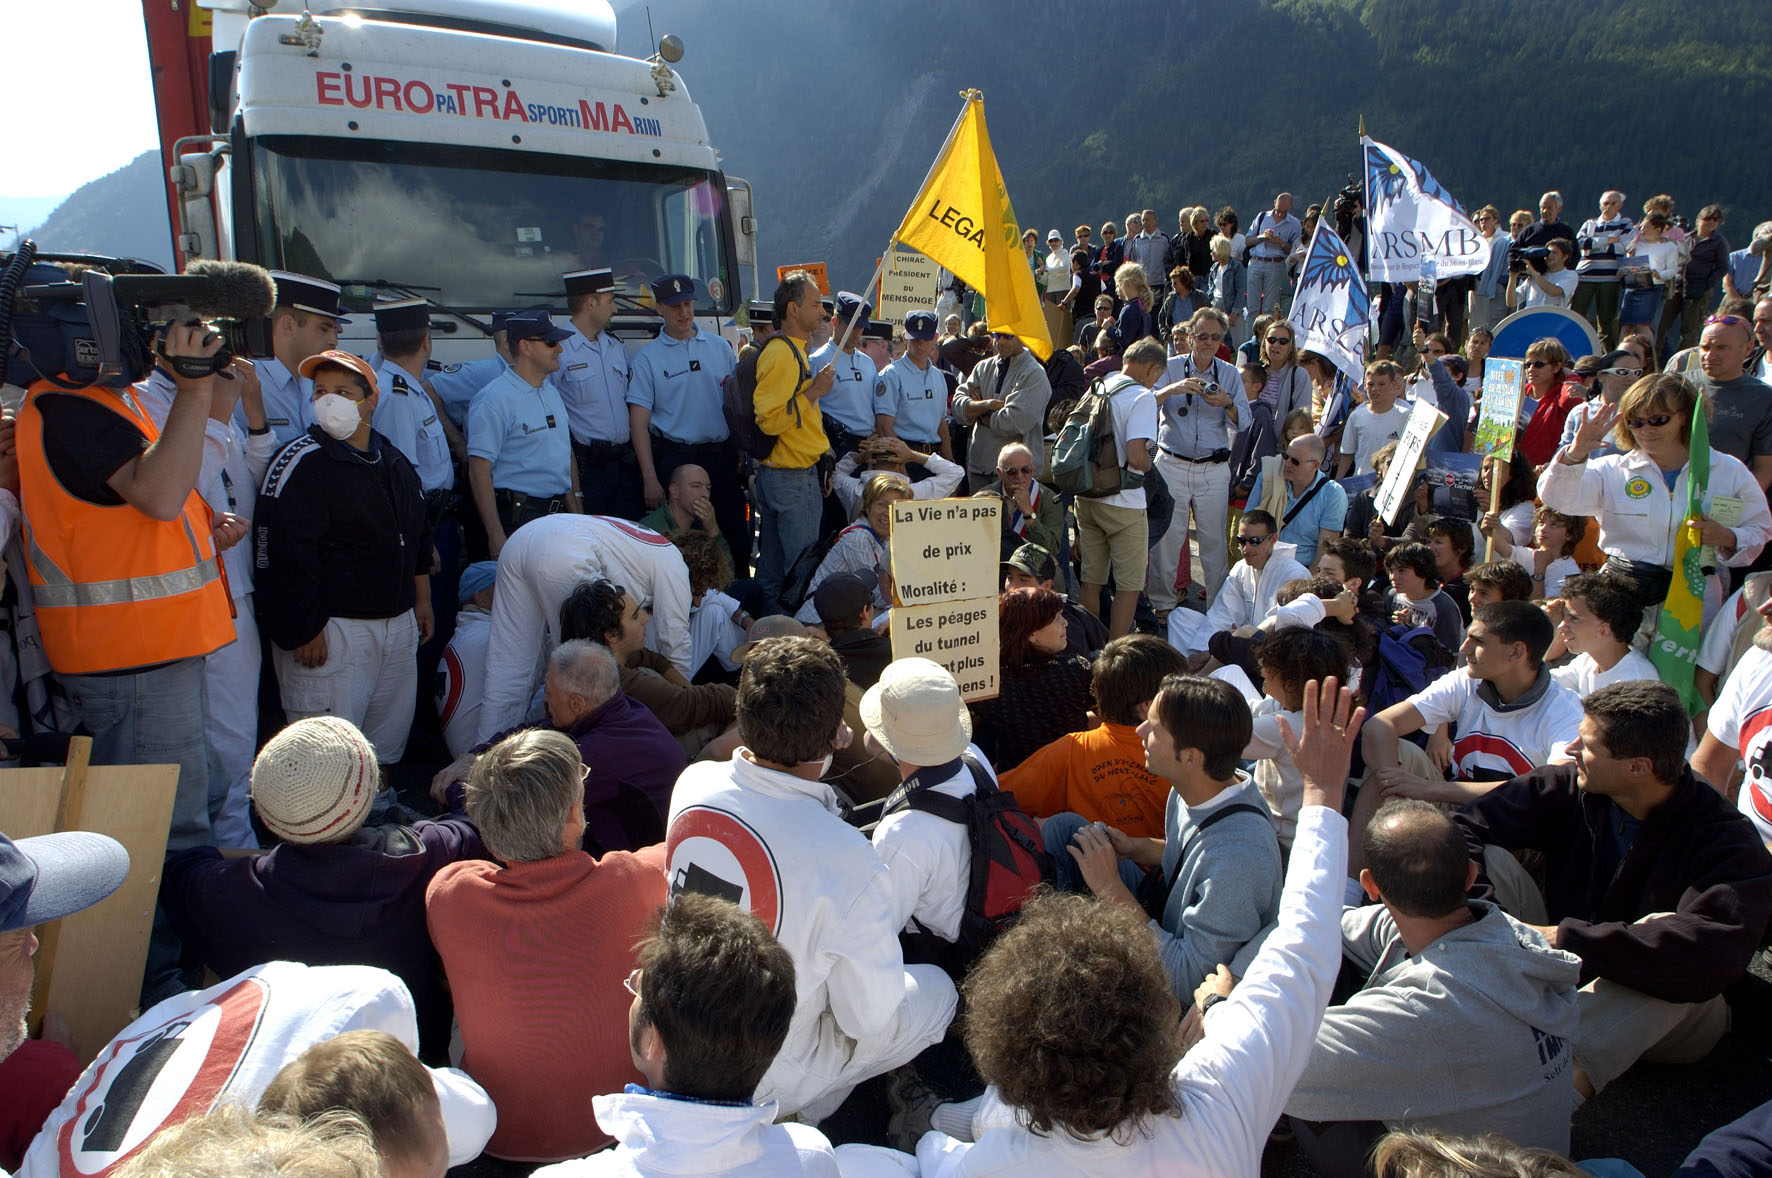 8 juin 2005, action citoyenne spontanée à Chamonix suite à l'accident du tunnel du Fréjus